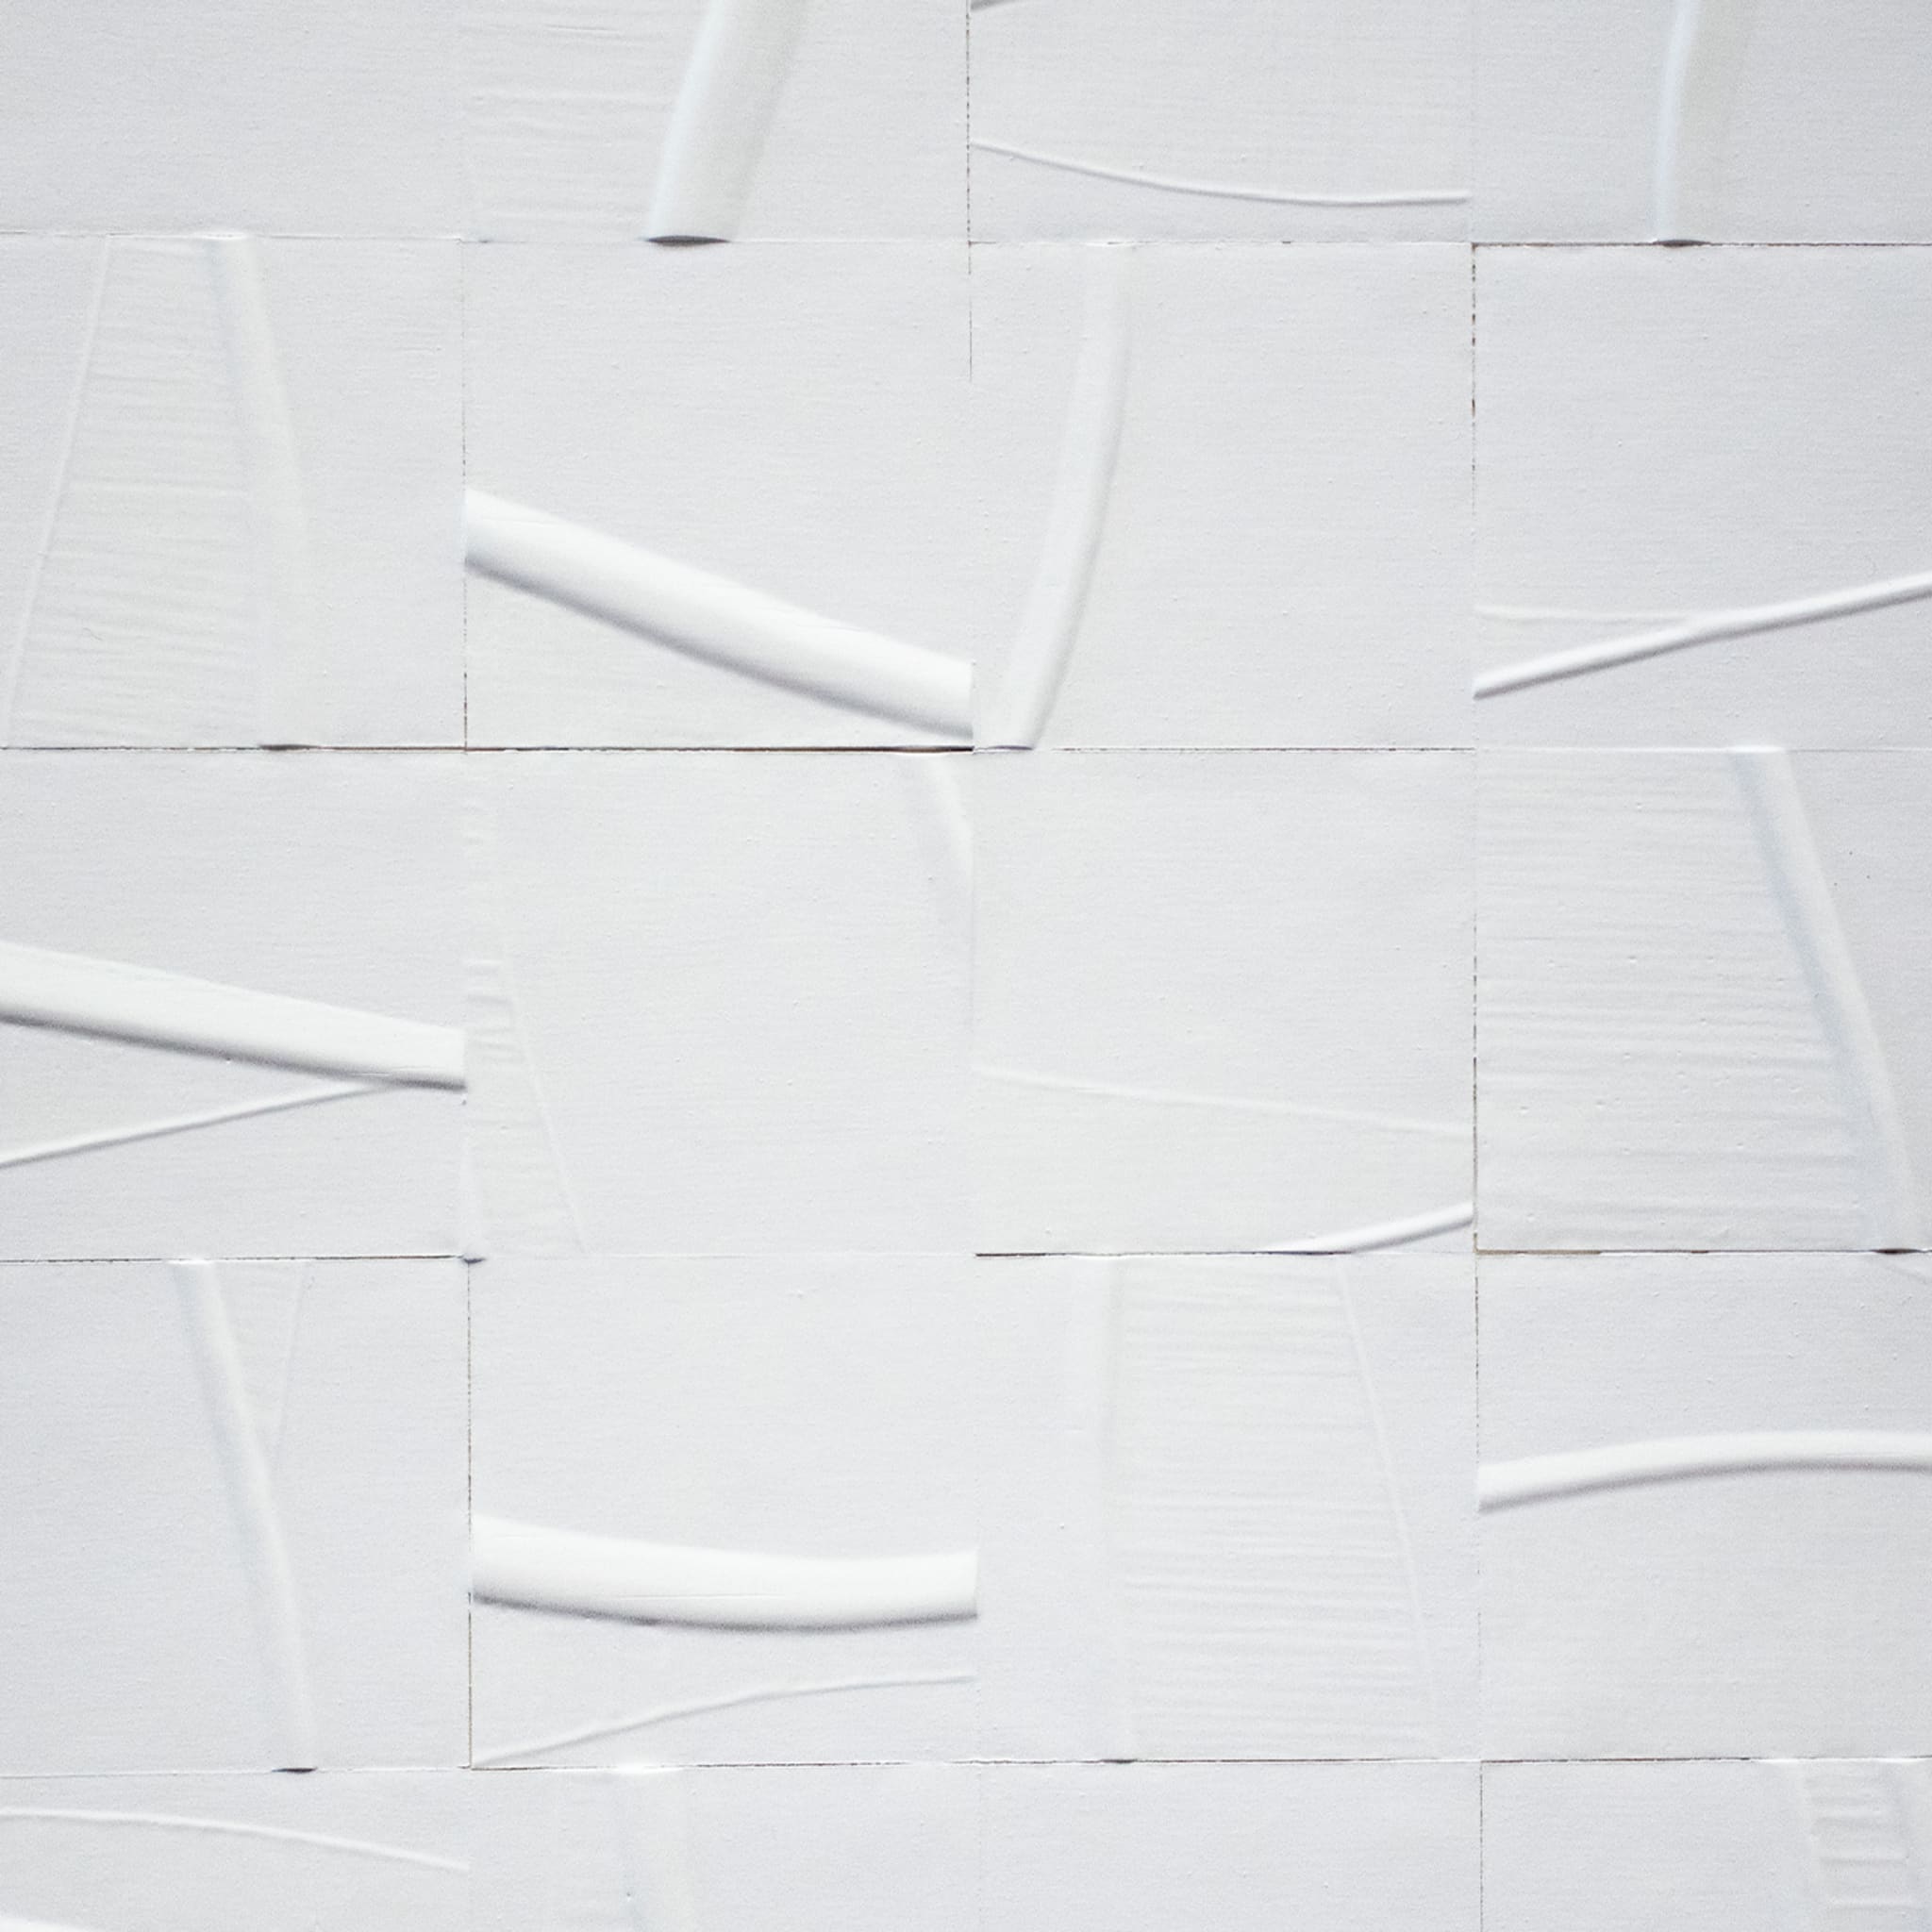 Matte White #1 Wallpaper TRACCE Collection - Alternative view 2